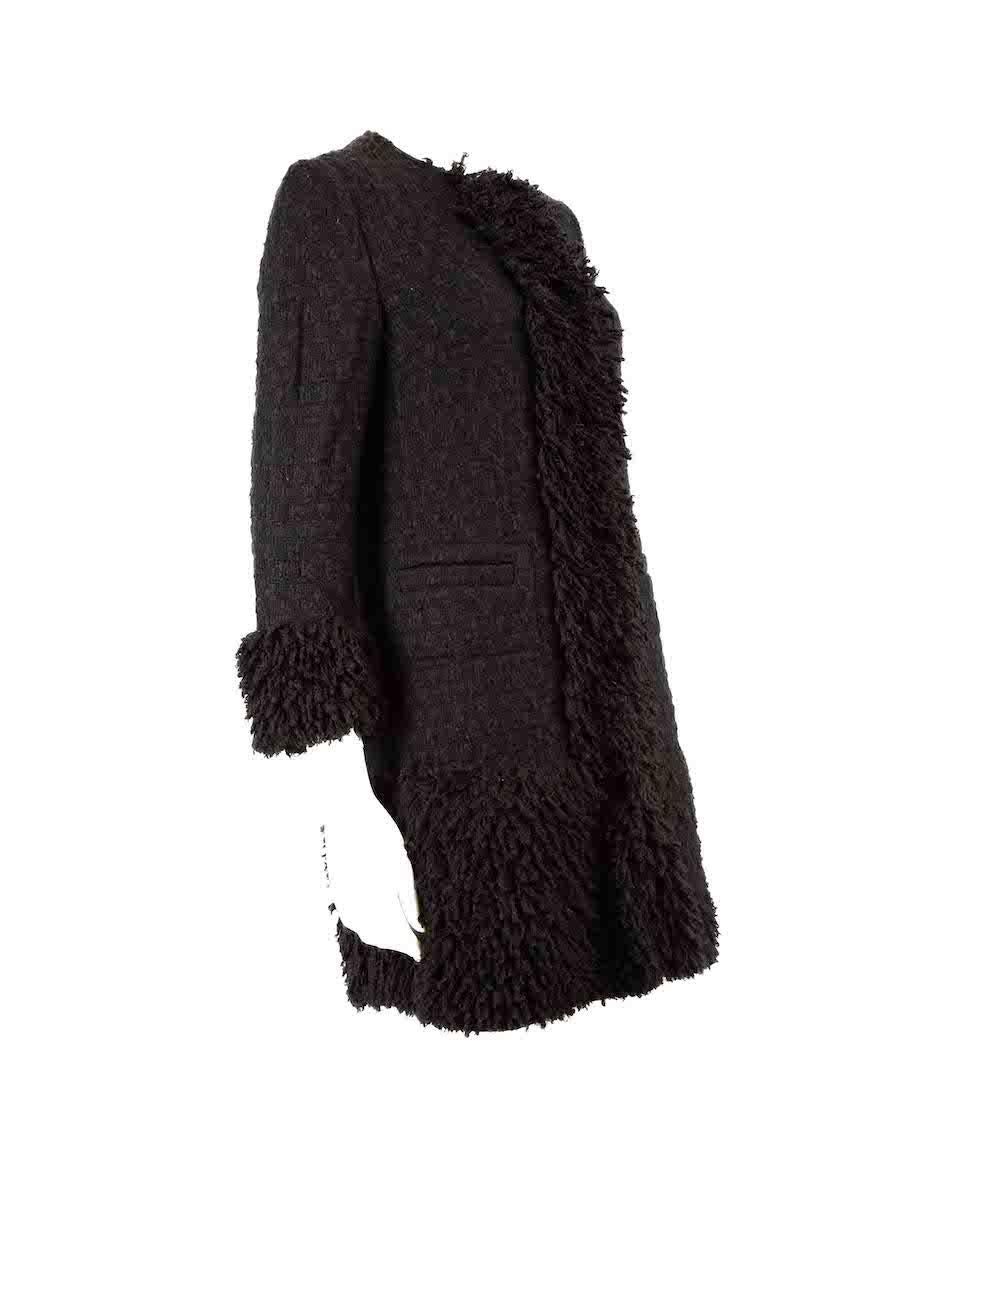 CONDIT ist sehr gut. Der Mantel weist nur minimale Abnutzung auf. Minimale Abnutzung der gesamten Mantel mit leichten Pilling auf diesem gebrauchten Dolce & Gabbana Designer Wiederverkauf Artikel gesehen.
 
 
 
 Einzelheiten
 
 
 Schwarz
 
 Tweed
 
